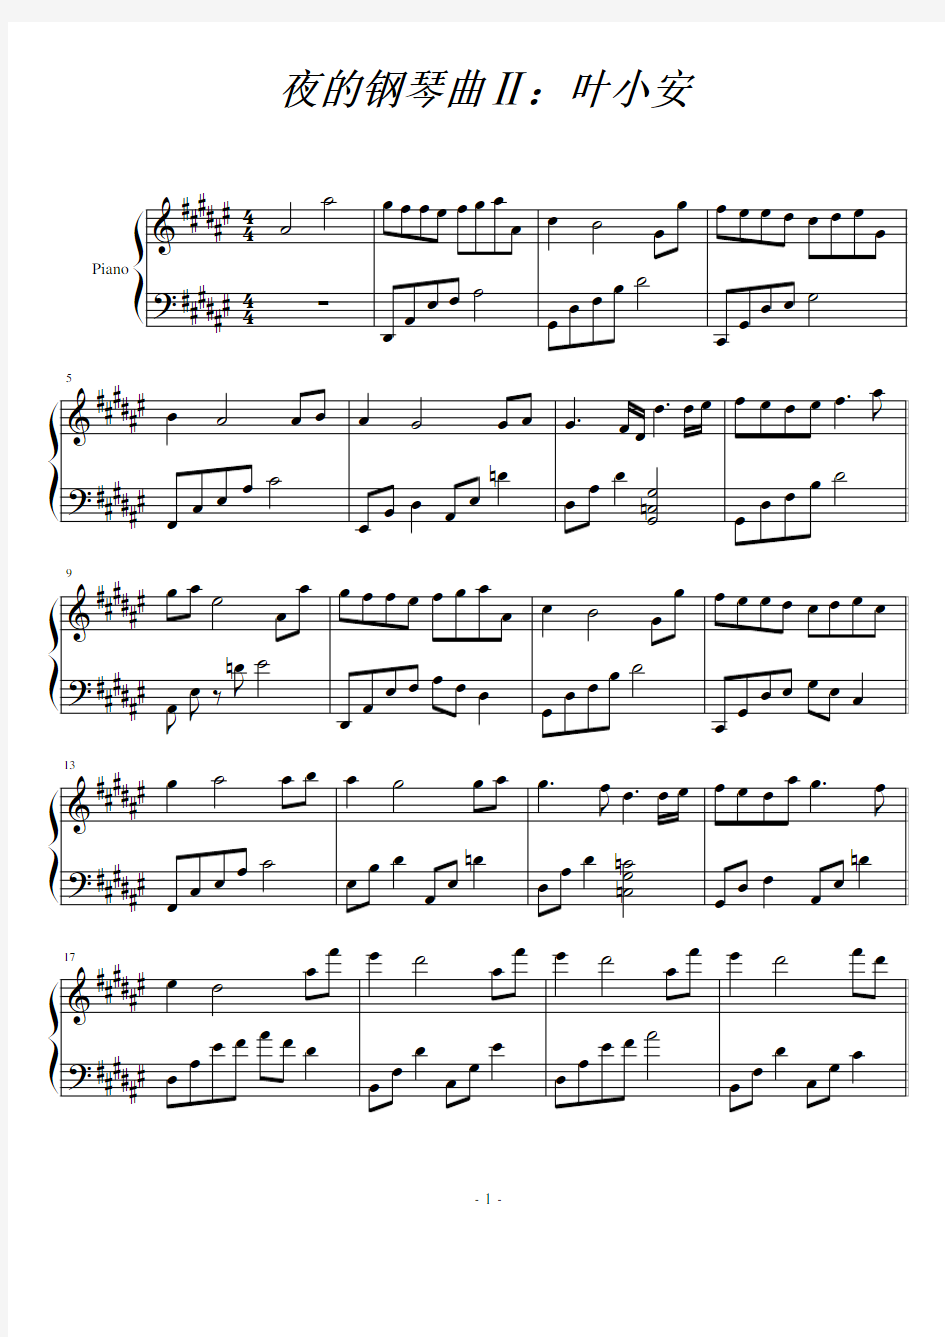 夜的钢琴曲Ⅱ：叶小安(石进)原版 正谱 钢琴谱 五线谱 乐谱